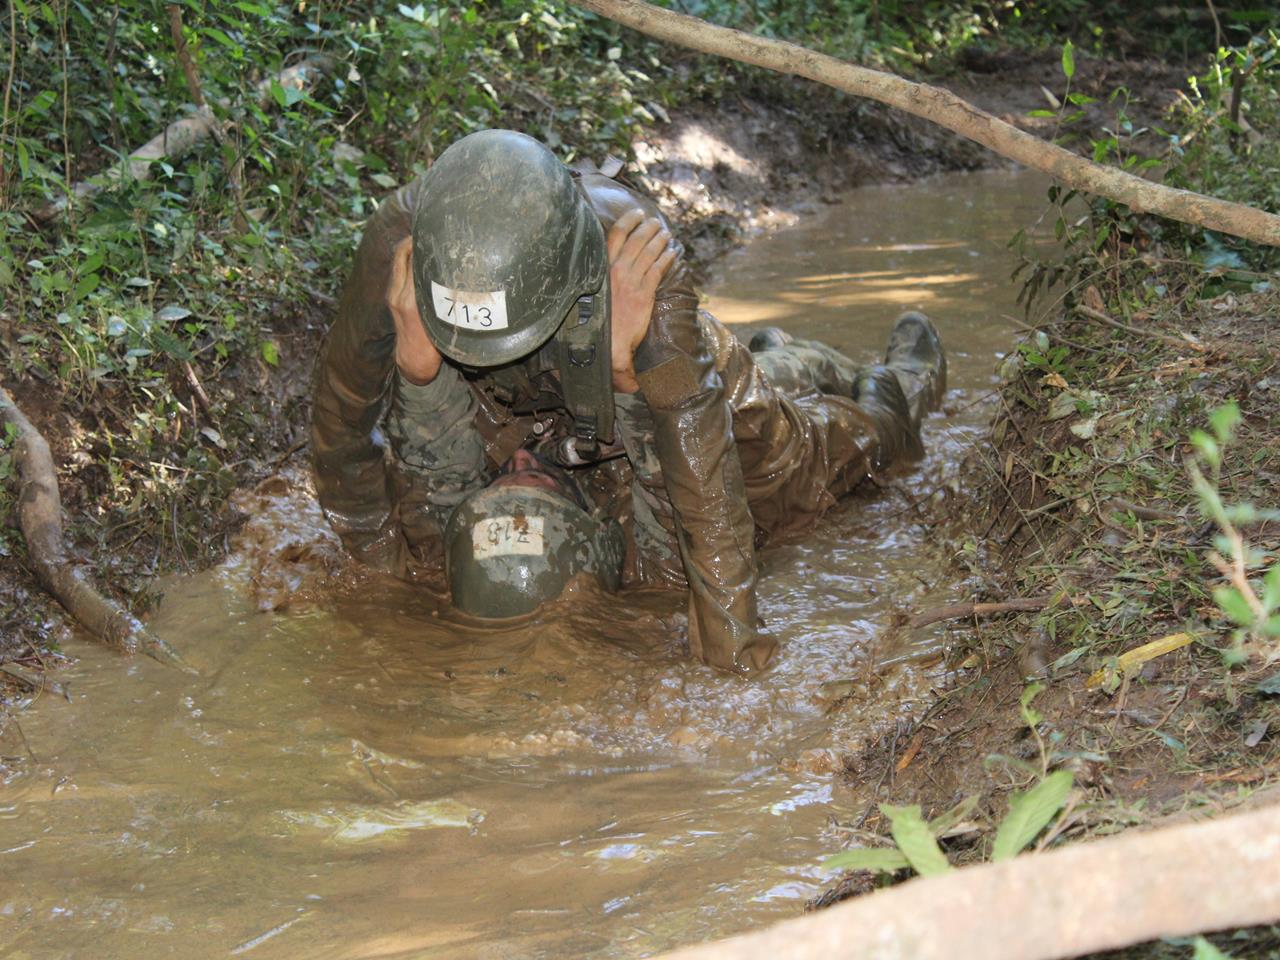 Exército Brasileiro - Durante as instruções no campo, todo soldado